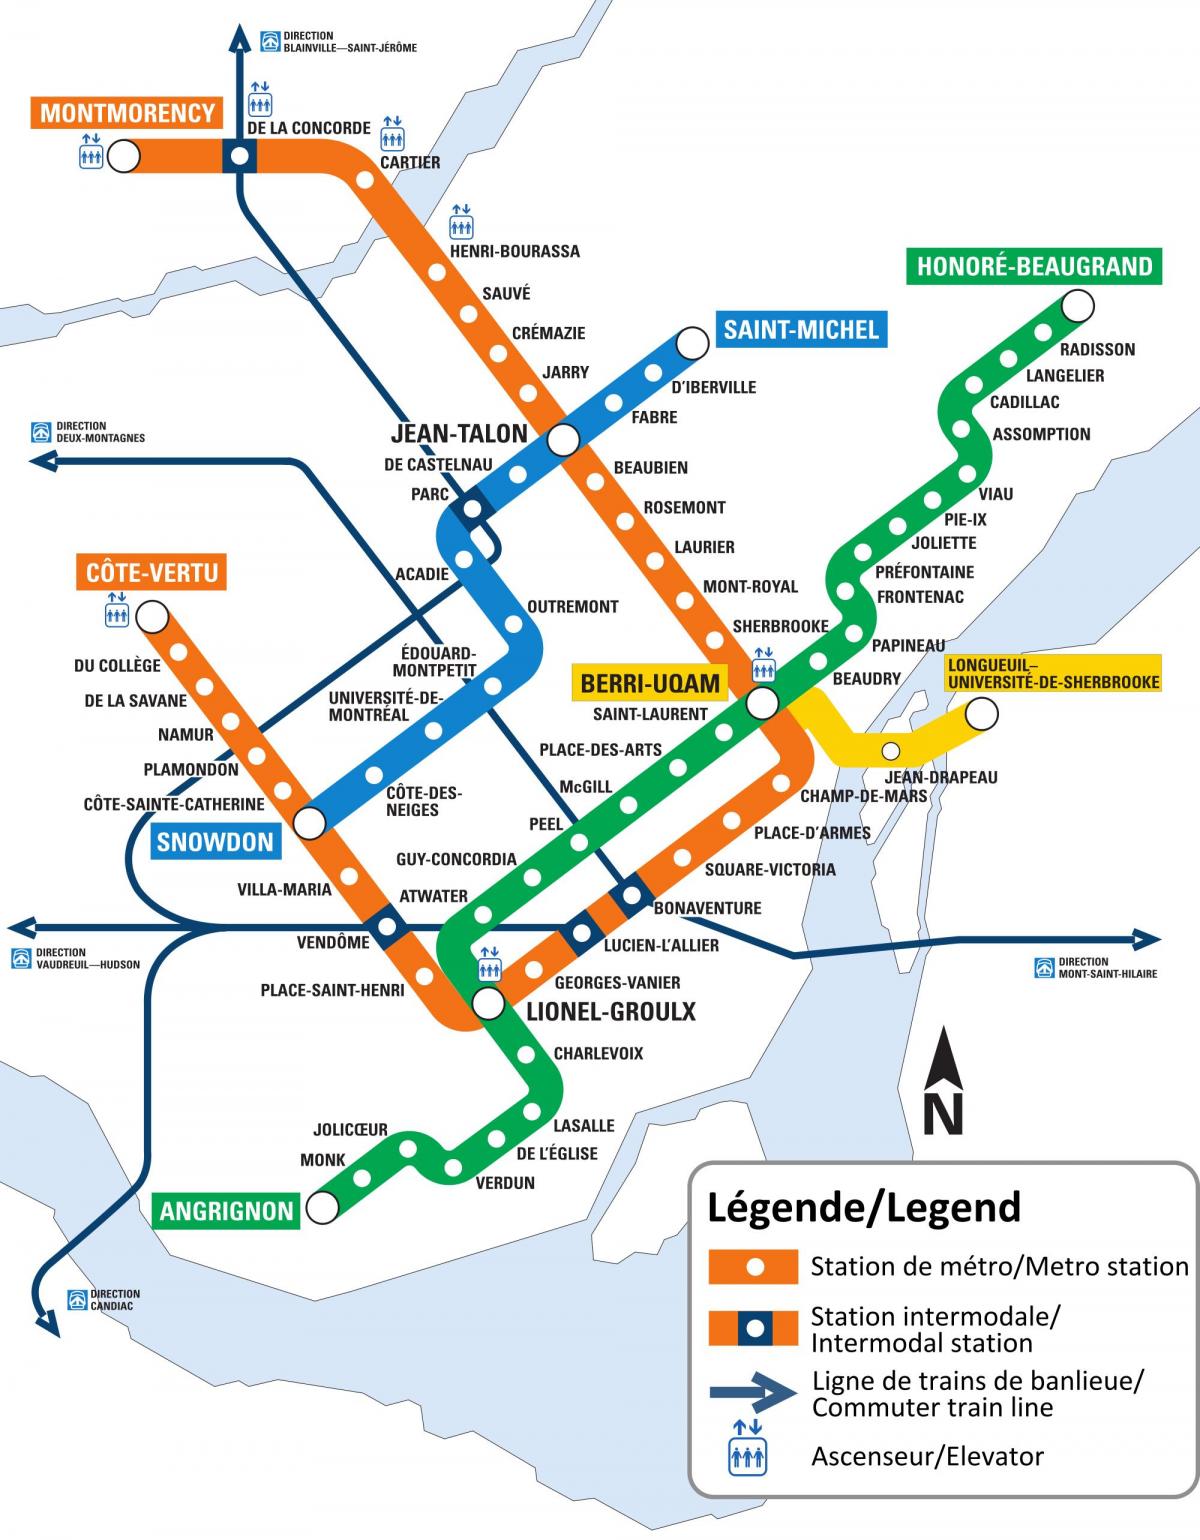 Mappa delle stazioni della metropolitana di Montreal